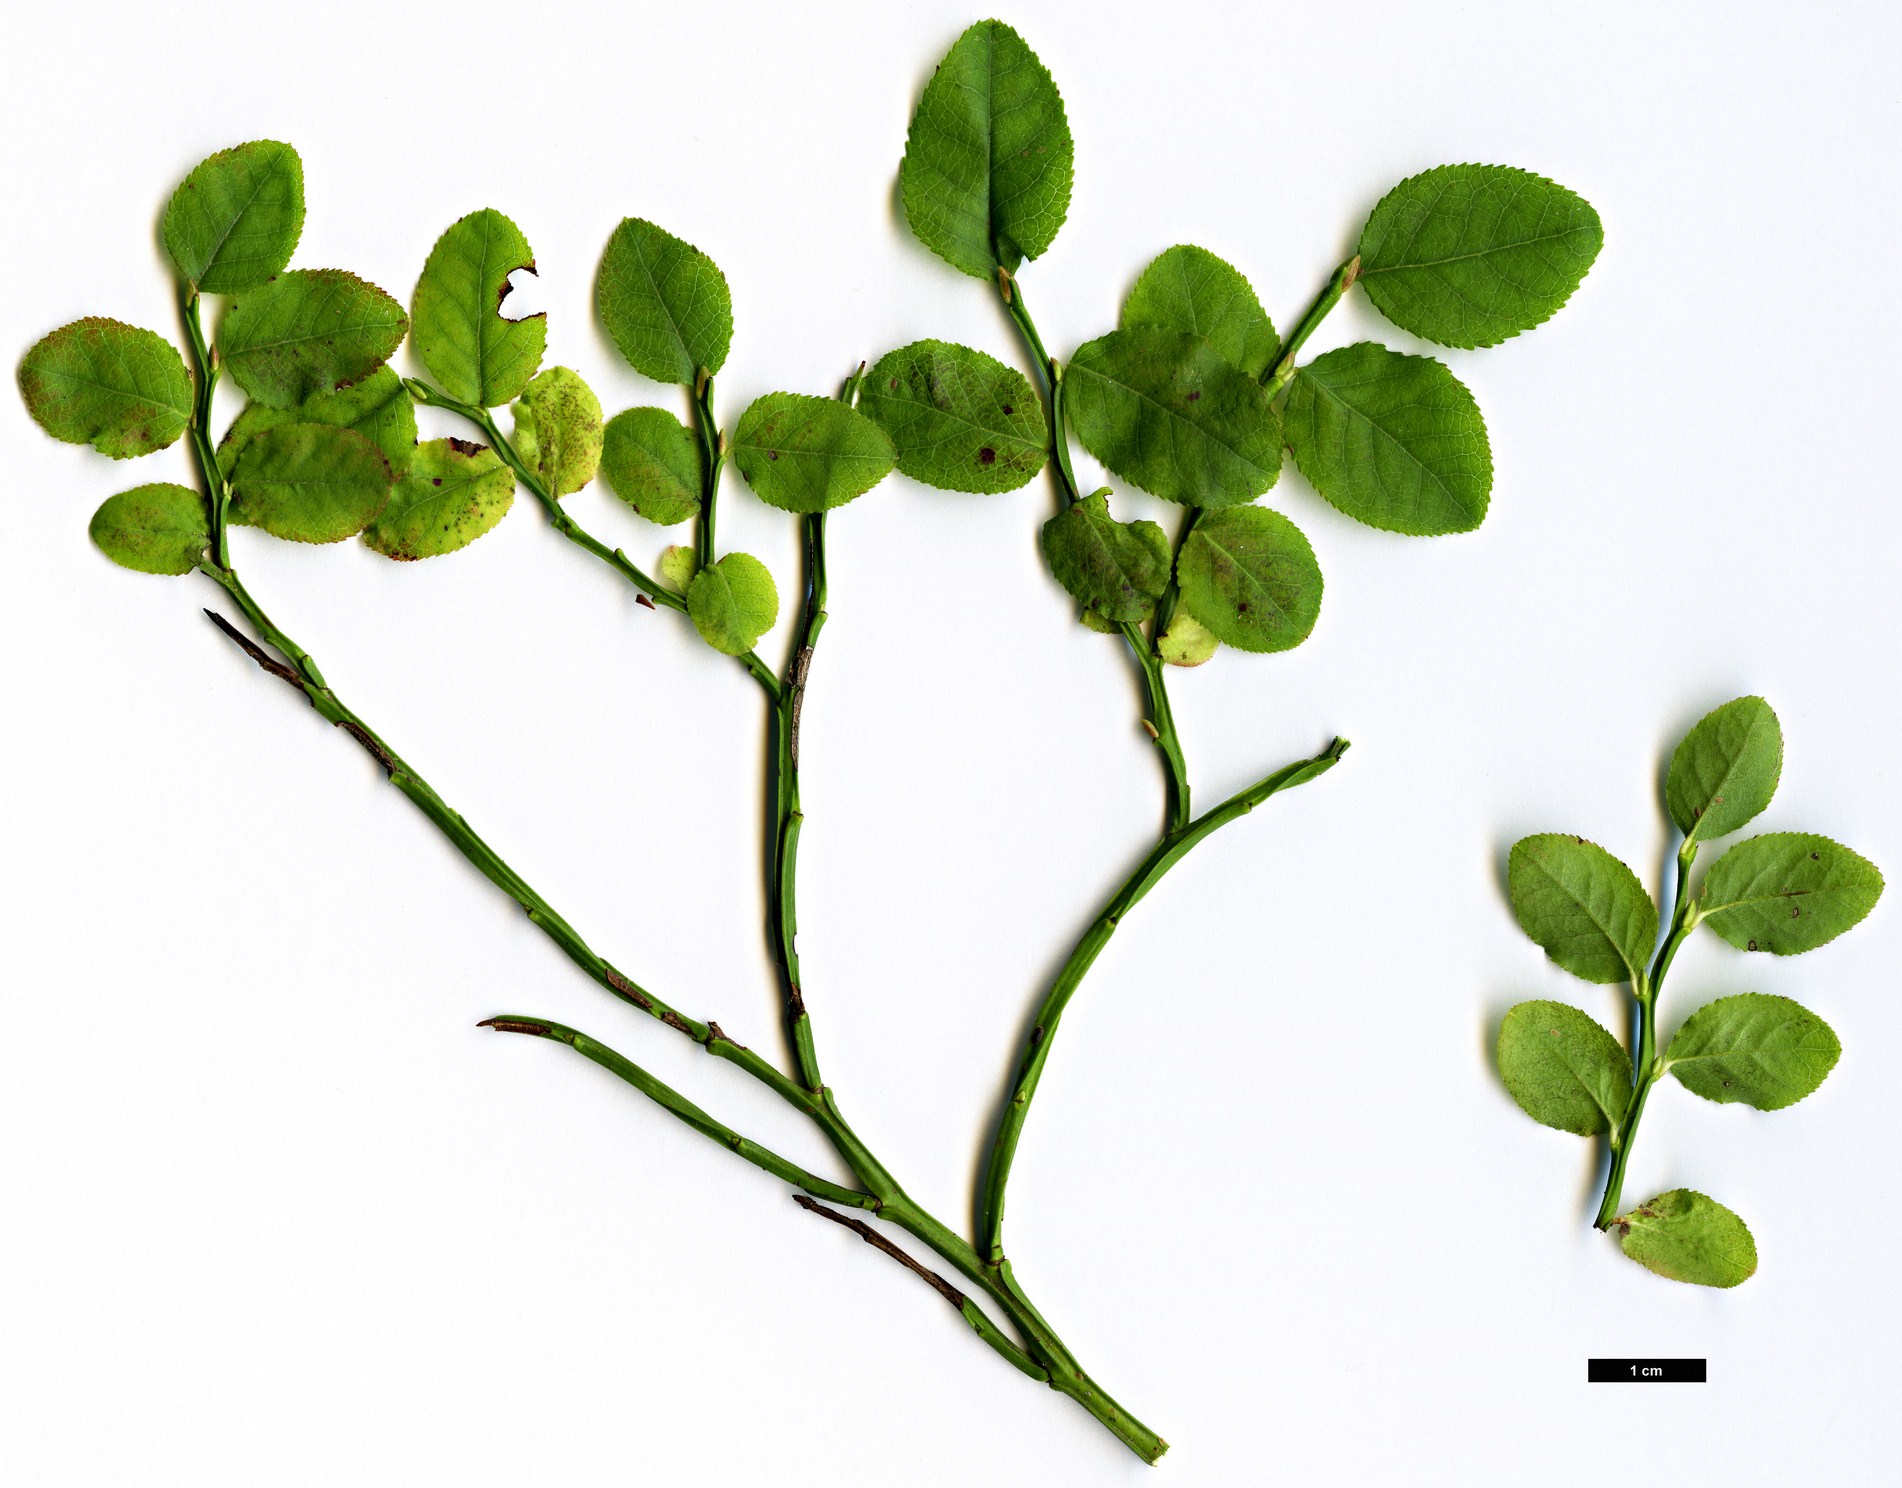 High resolution image: Family: Ericaceae - Genus: Vaccinium - Taxon: vitis-idaea